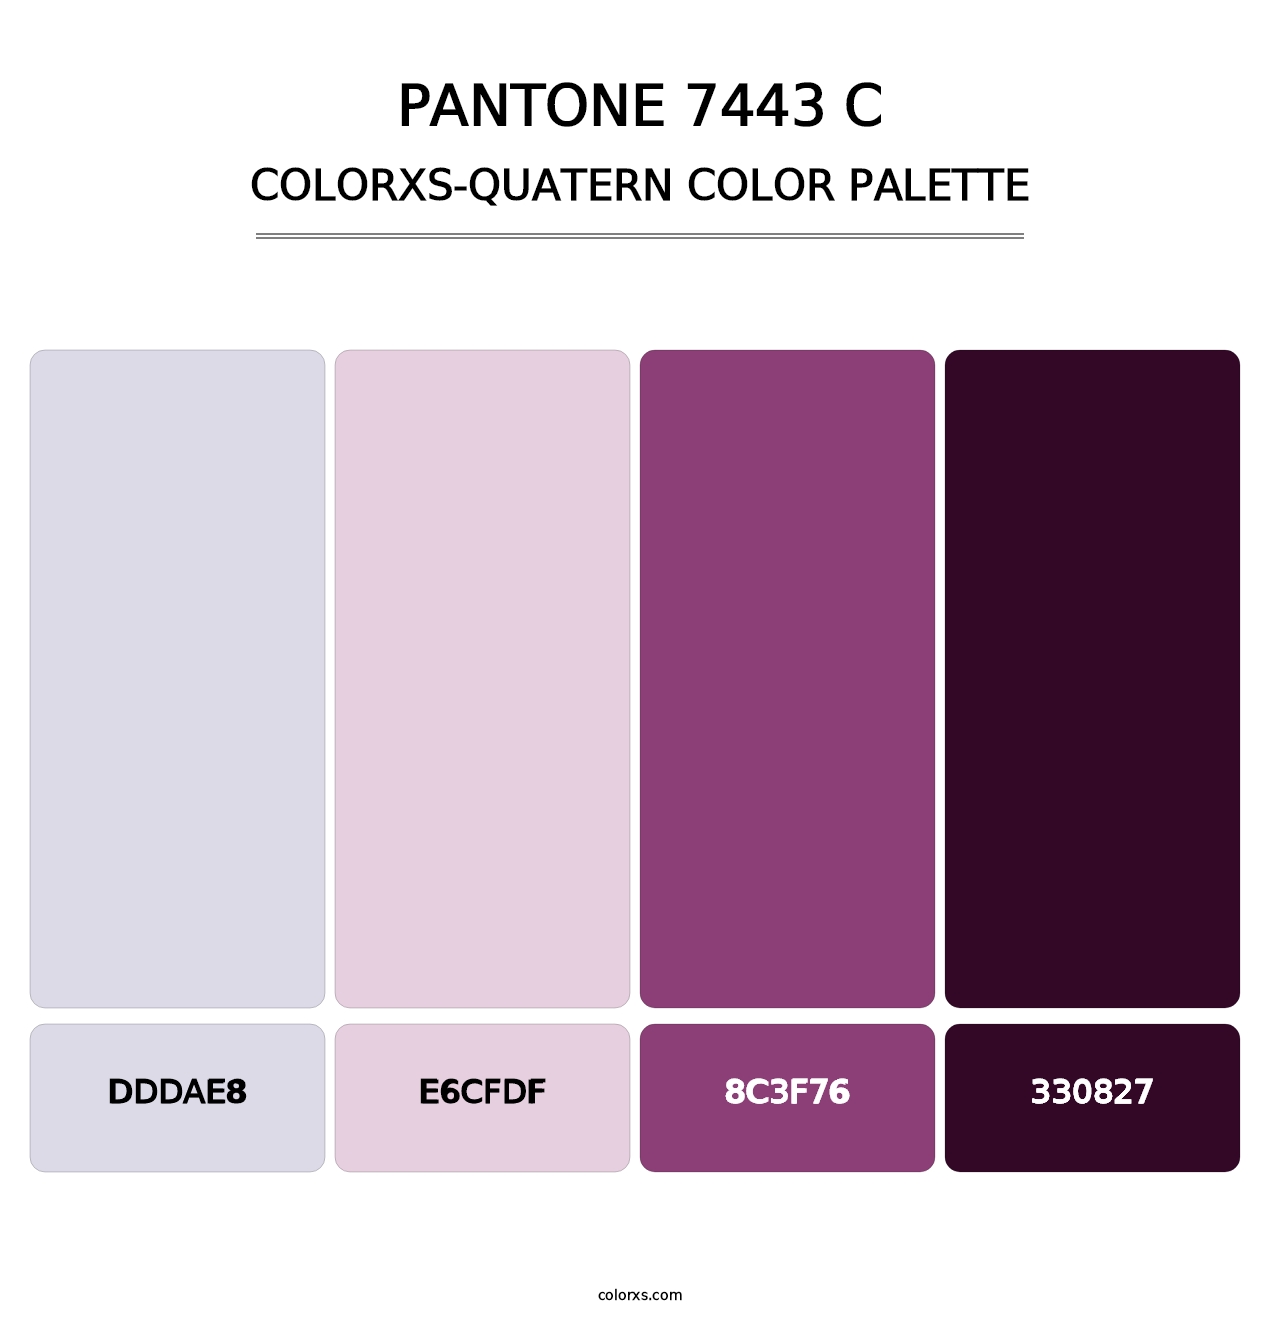 PANTONE 7443 C - Colorxs Quatern Palette